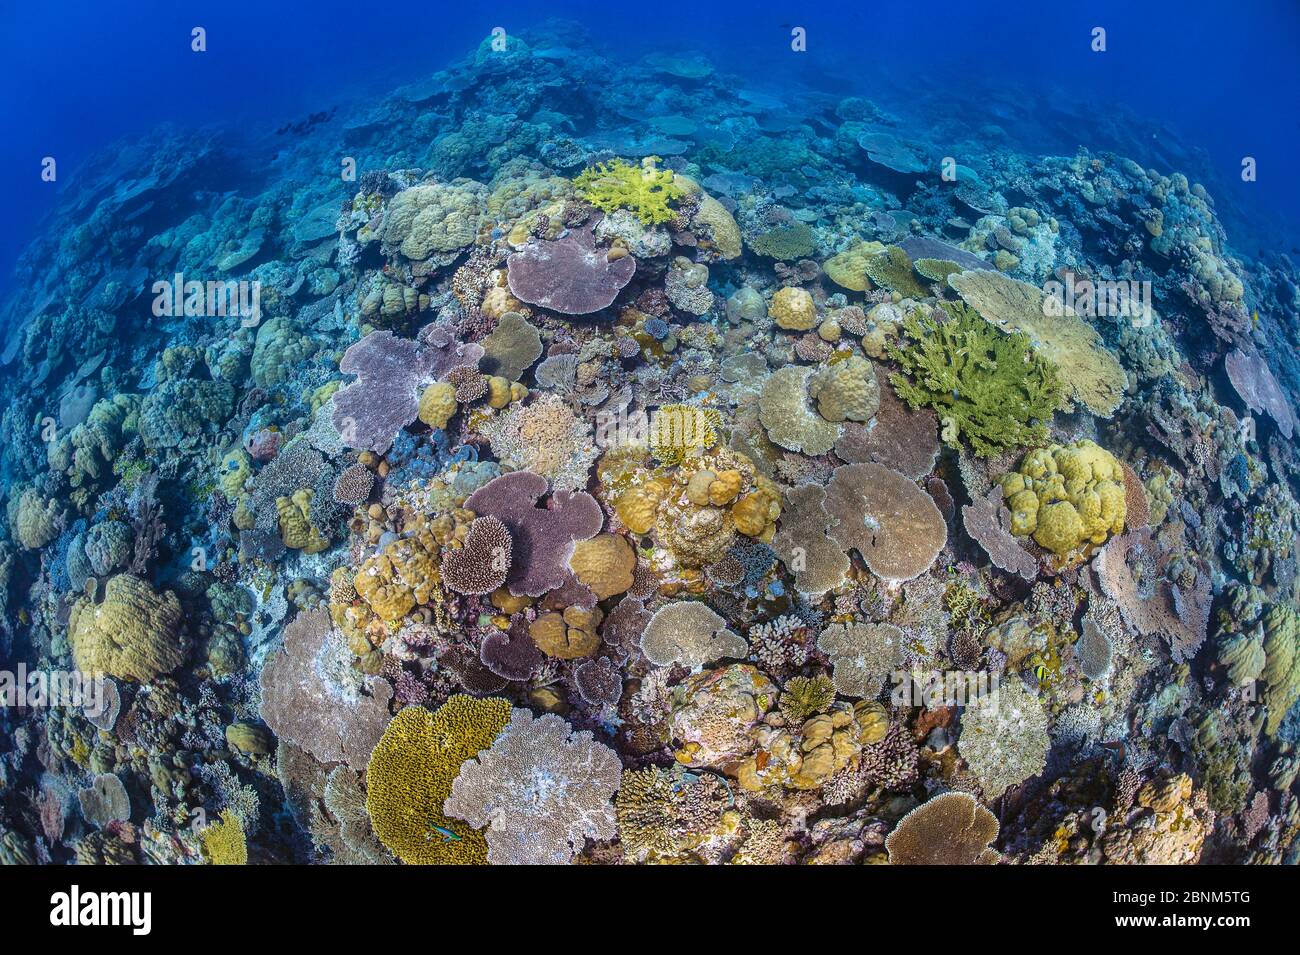 Un giardino di corallo, con molti coralli da tavola (Acropora sp) forma una barriera corallina, ulong, Isole Rock, Palau, Micronesia, Oceano Pacifico occidentale tropicale Foto Stock